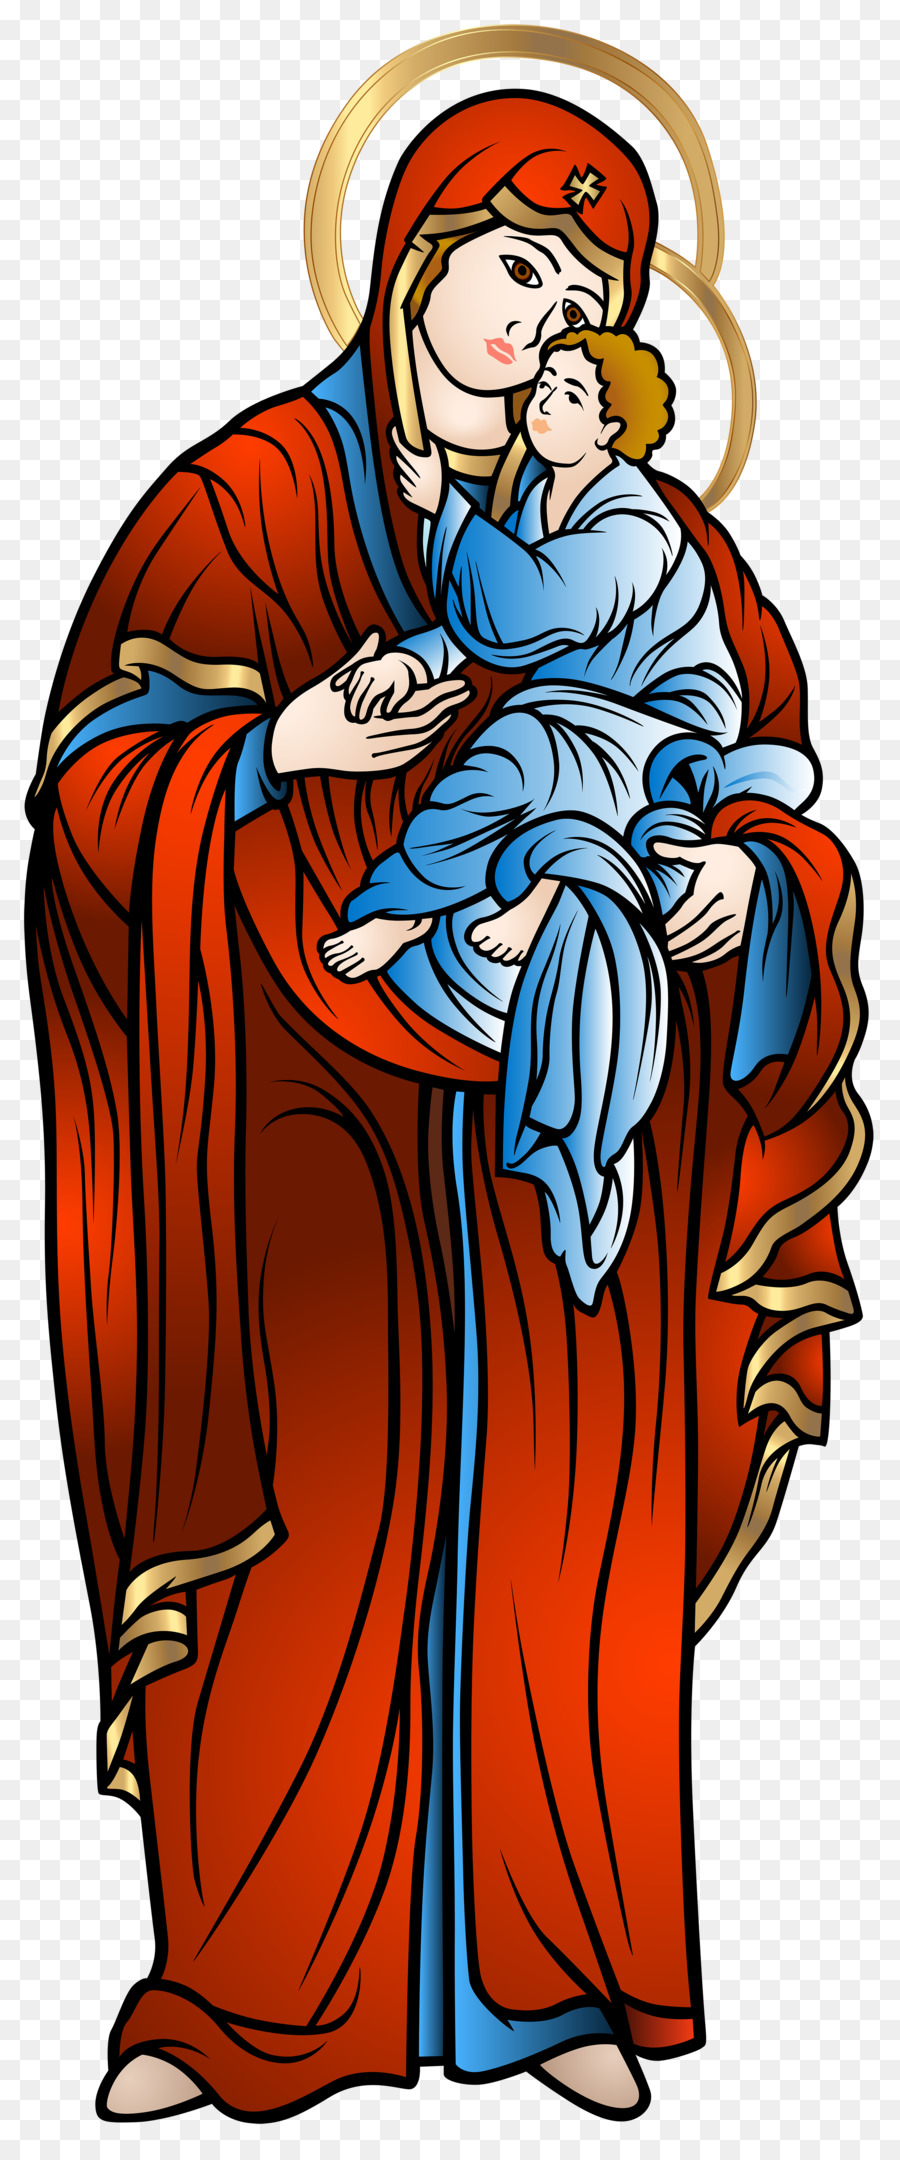 Adesivo Bambino Gesù, Dio del Cristianesimo Clip art - gesù